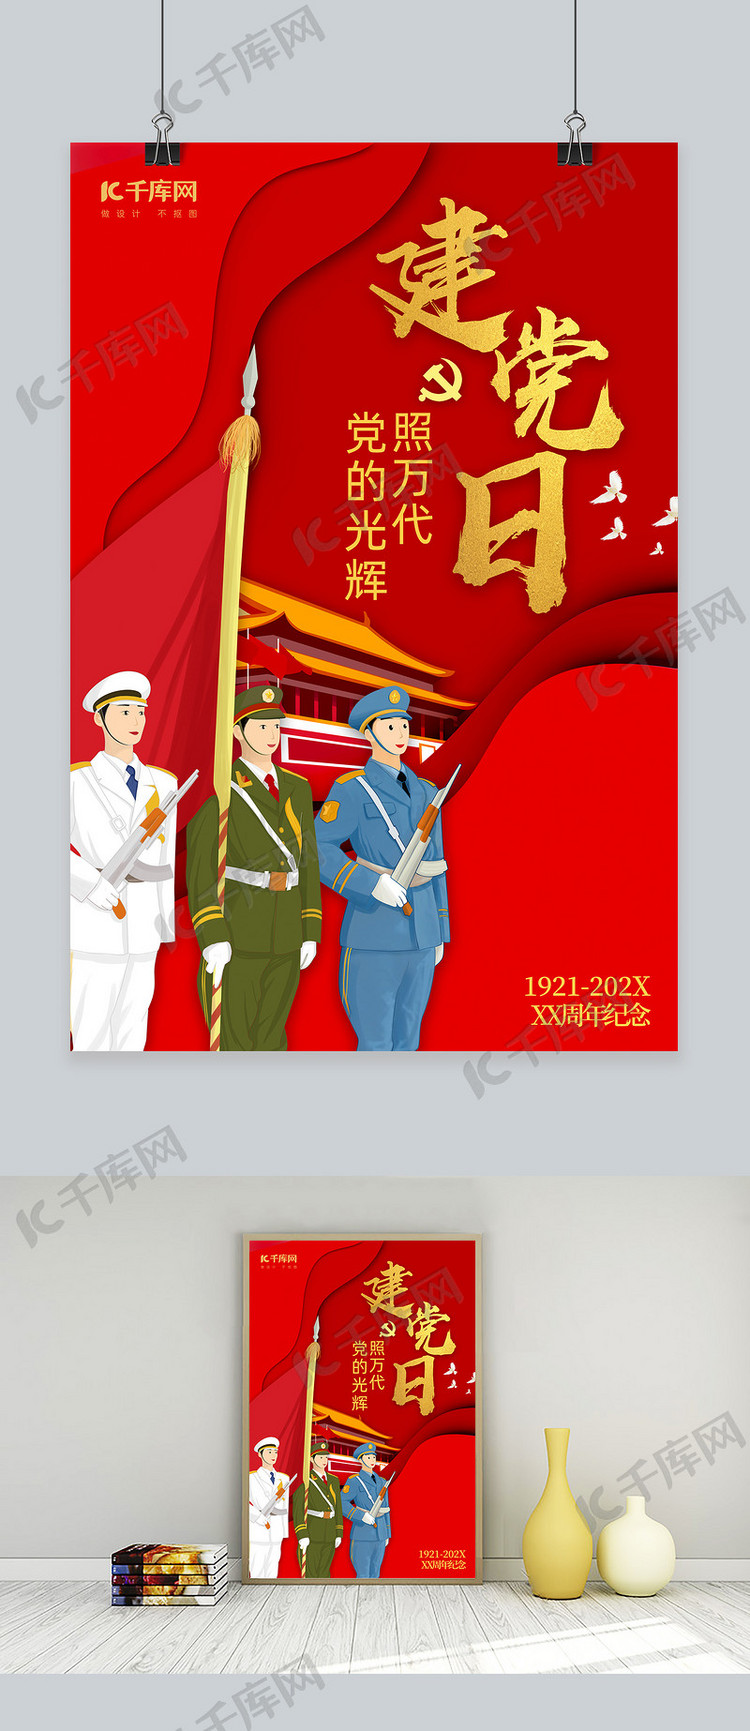 71建党节98周年记录日海报